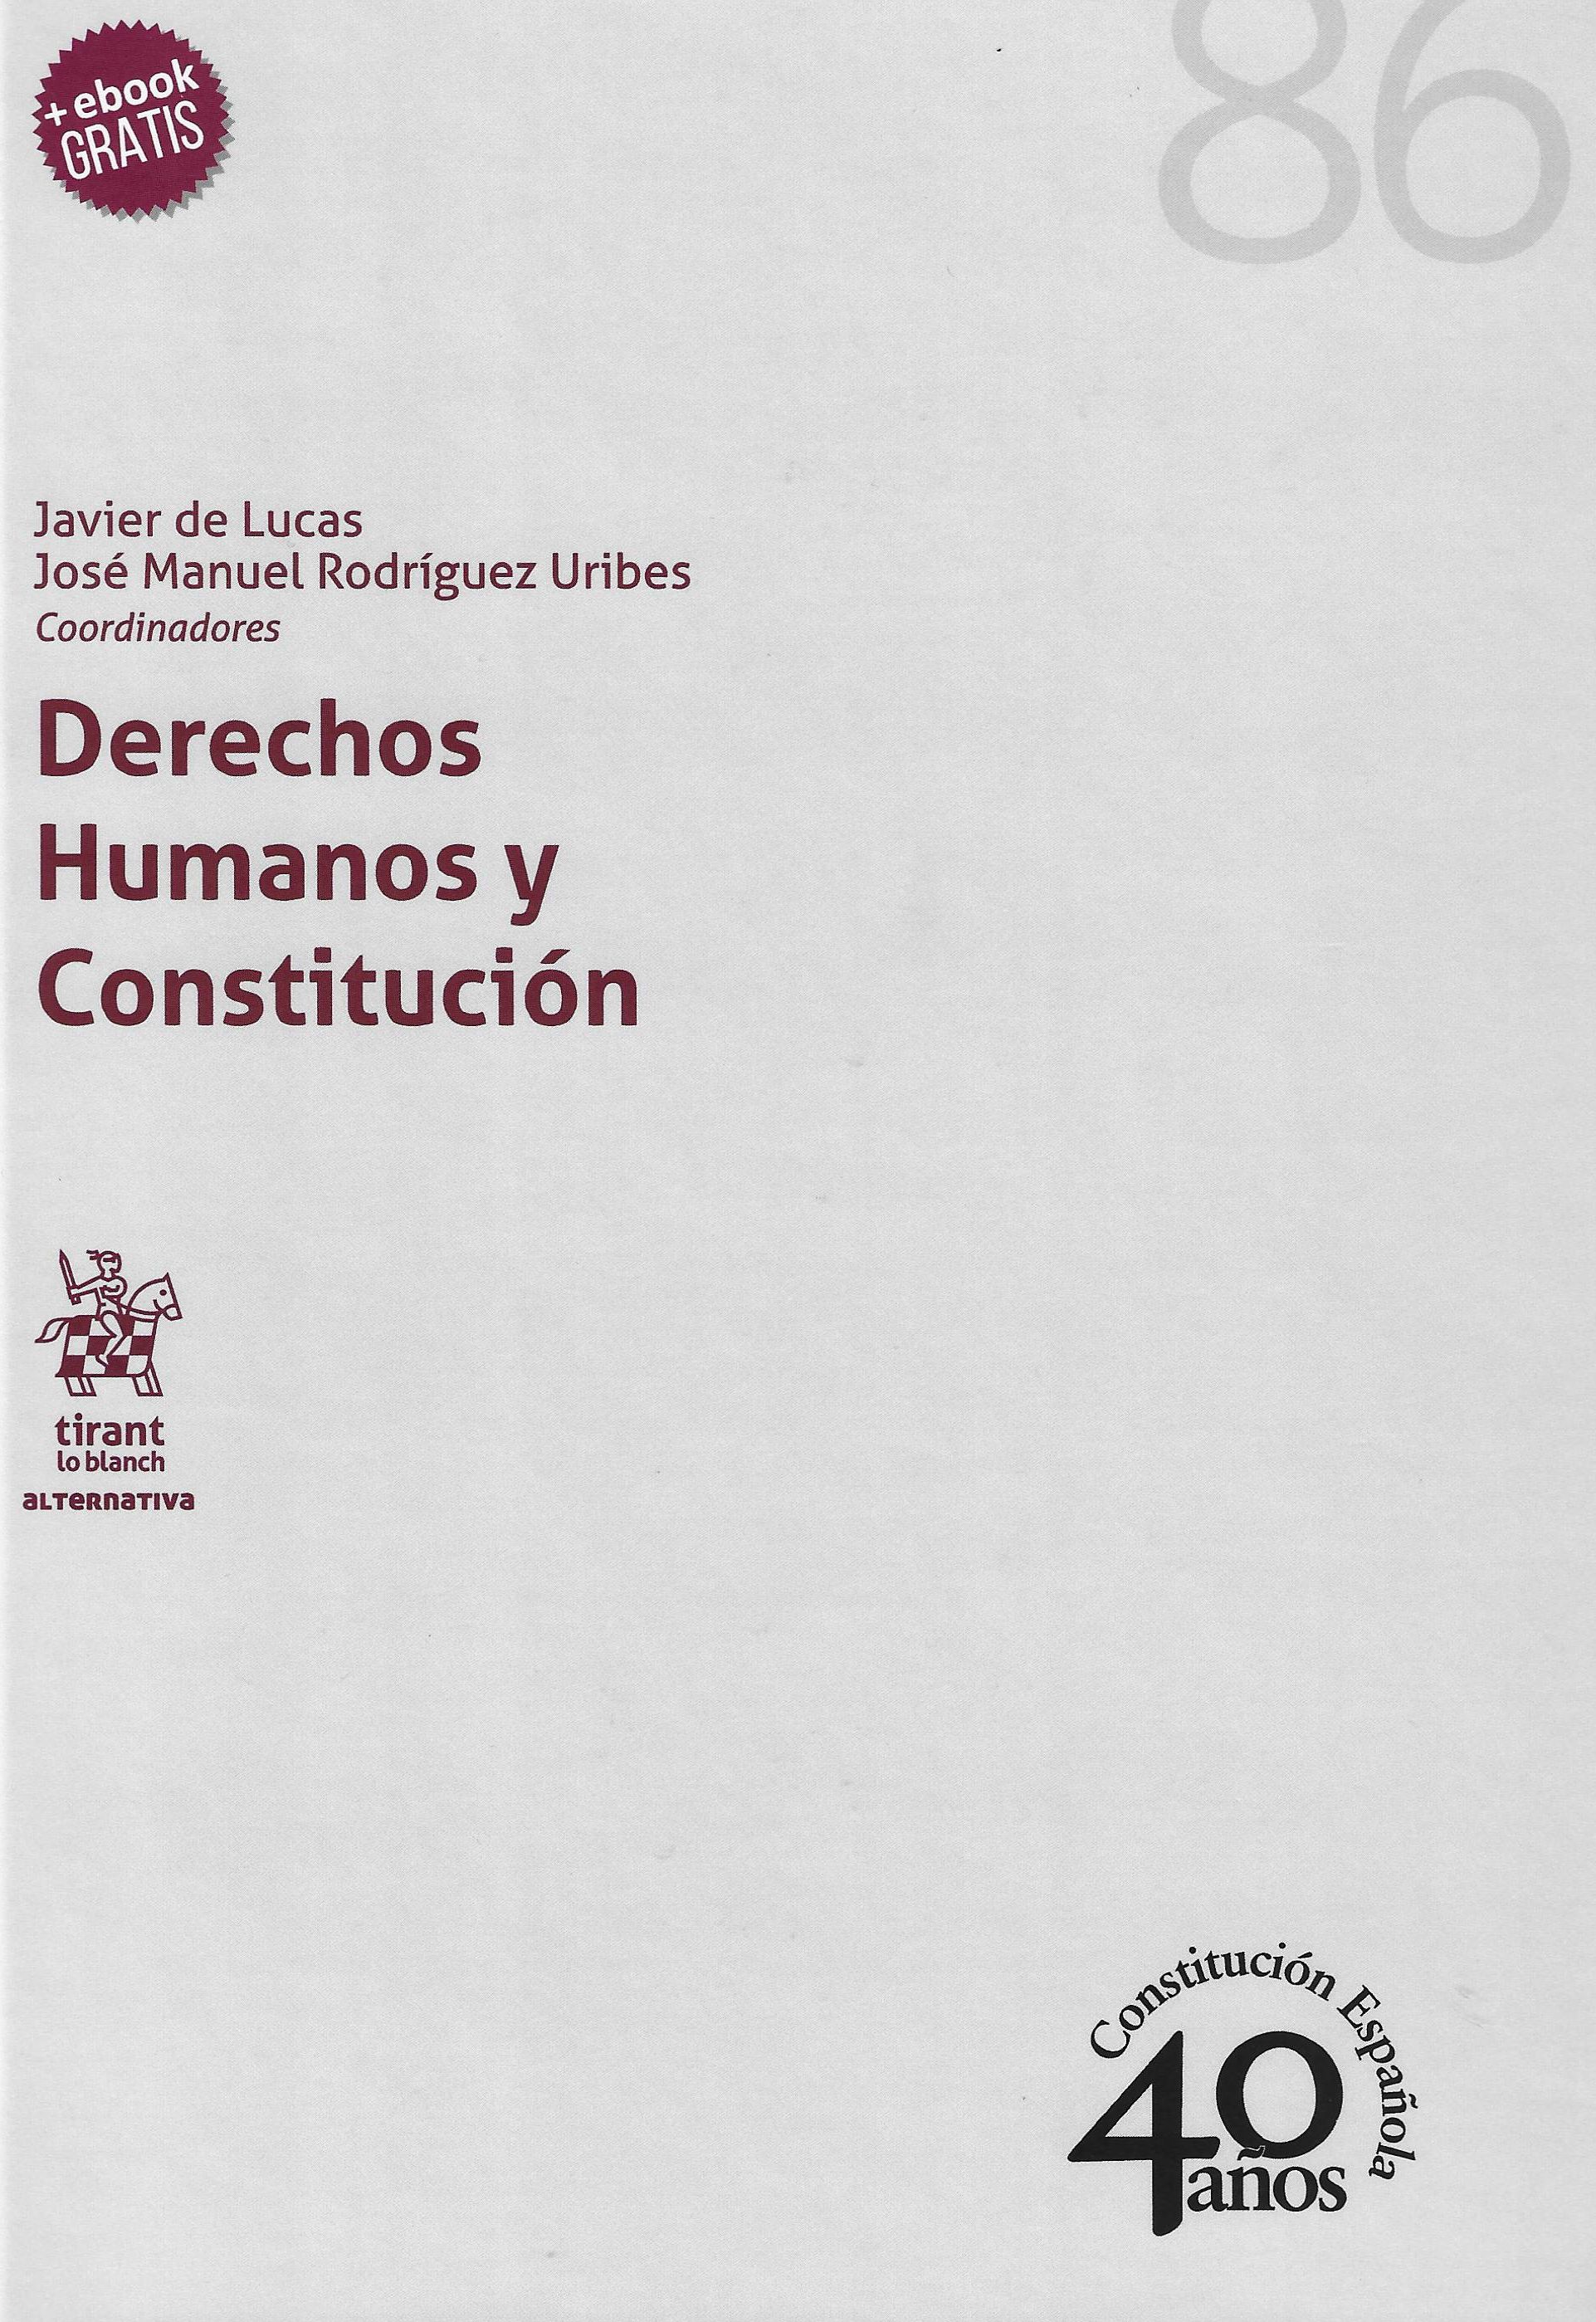 Imagen de portada del libro Derechos humanos y constitución